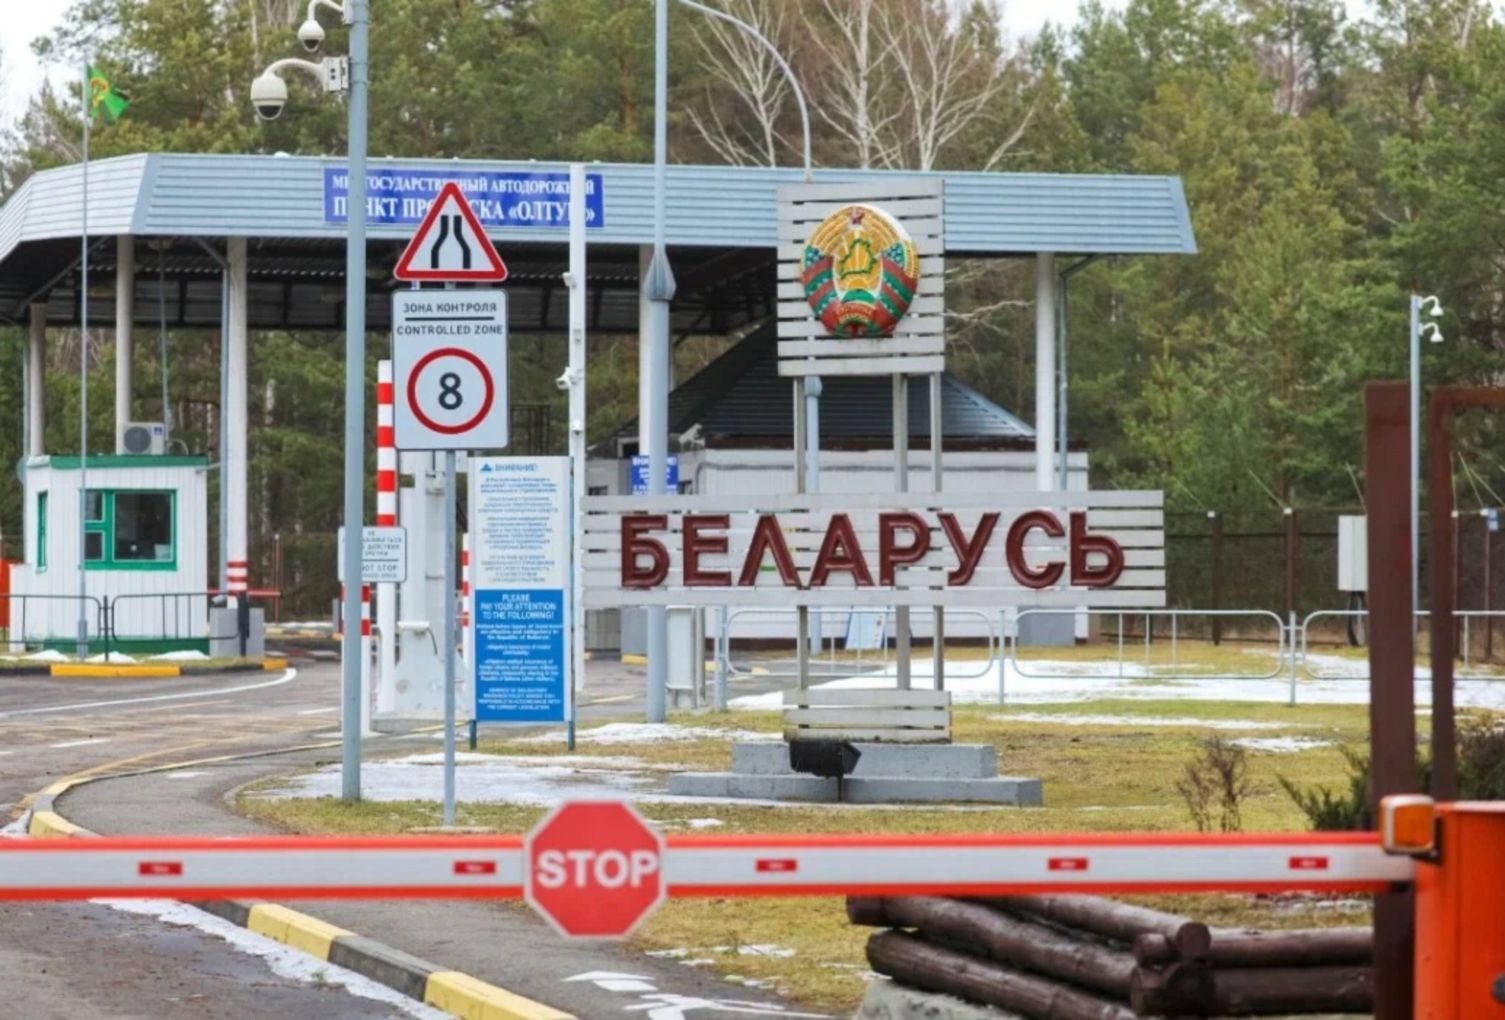 Можно пересекать границу белоруссия